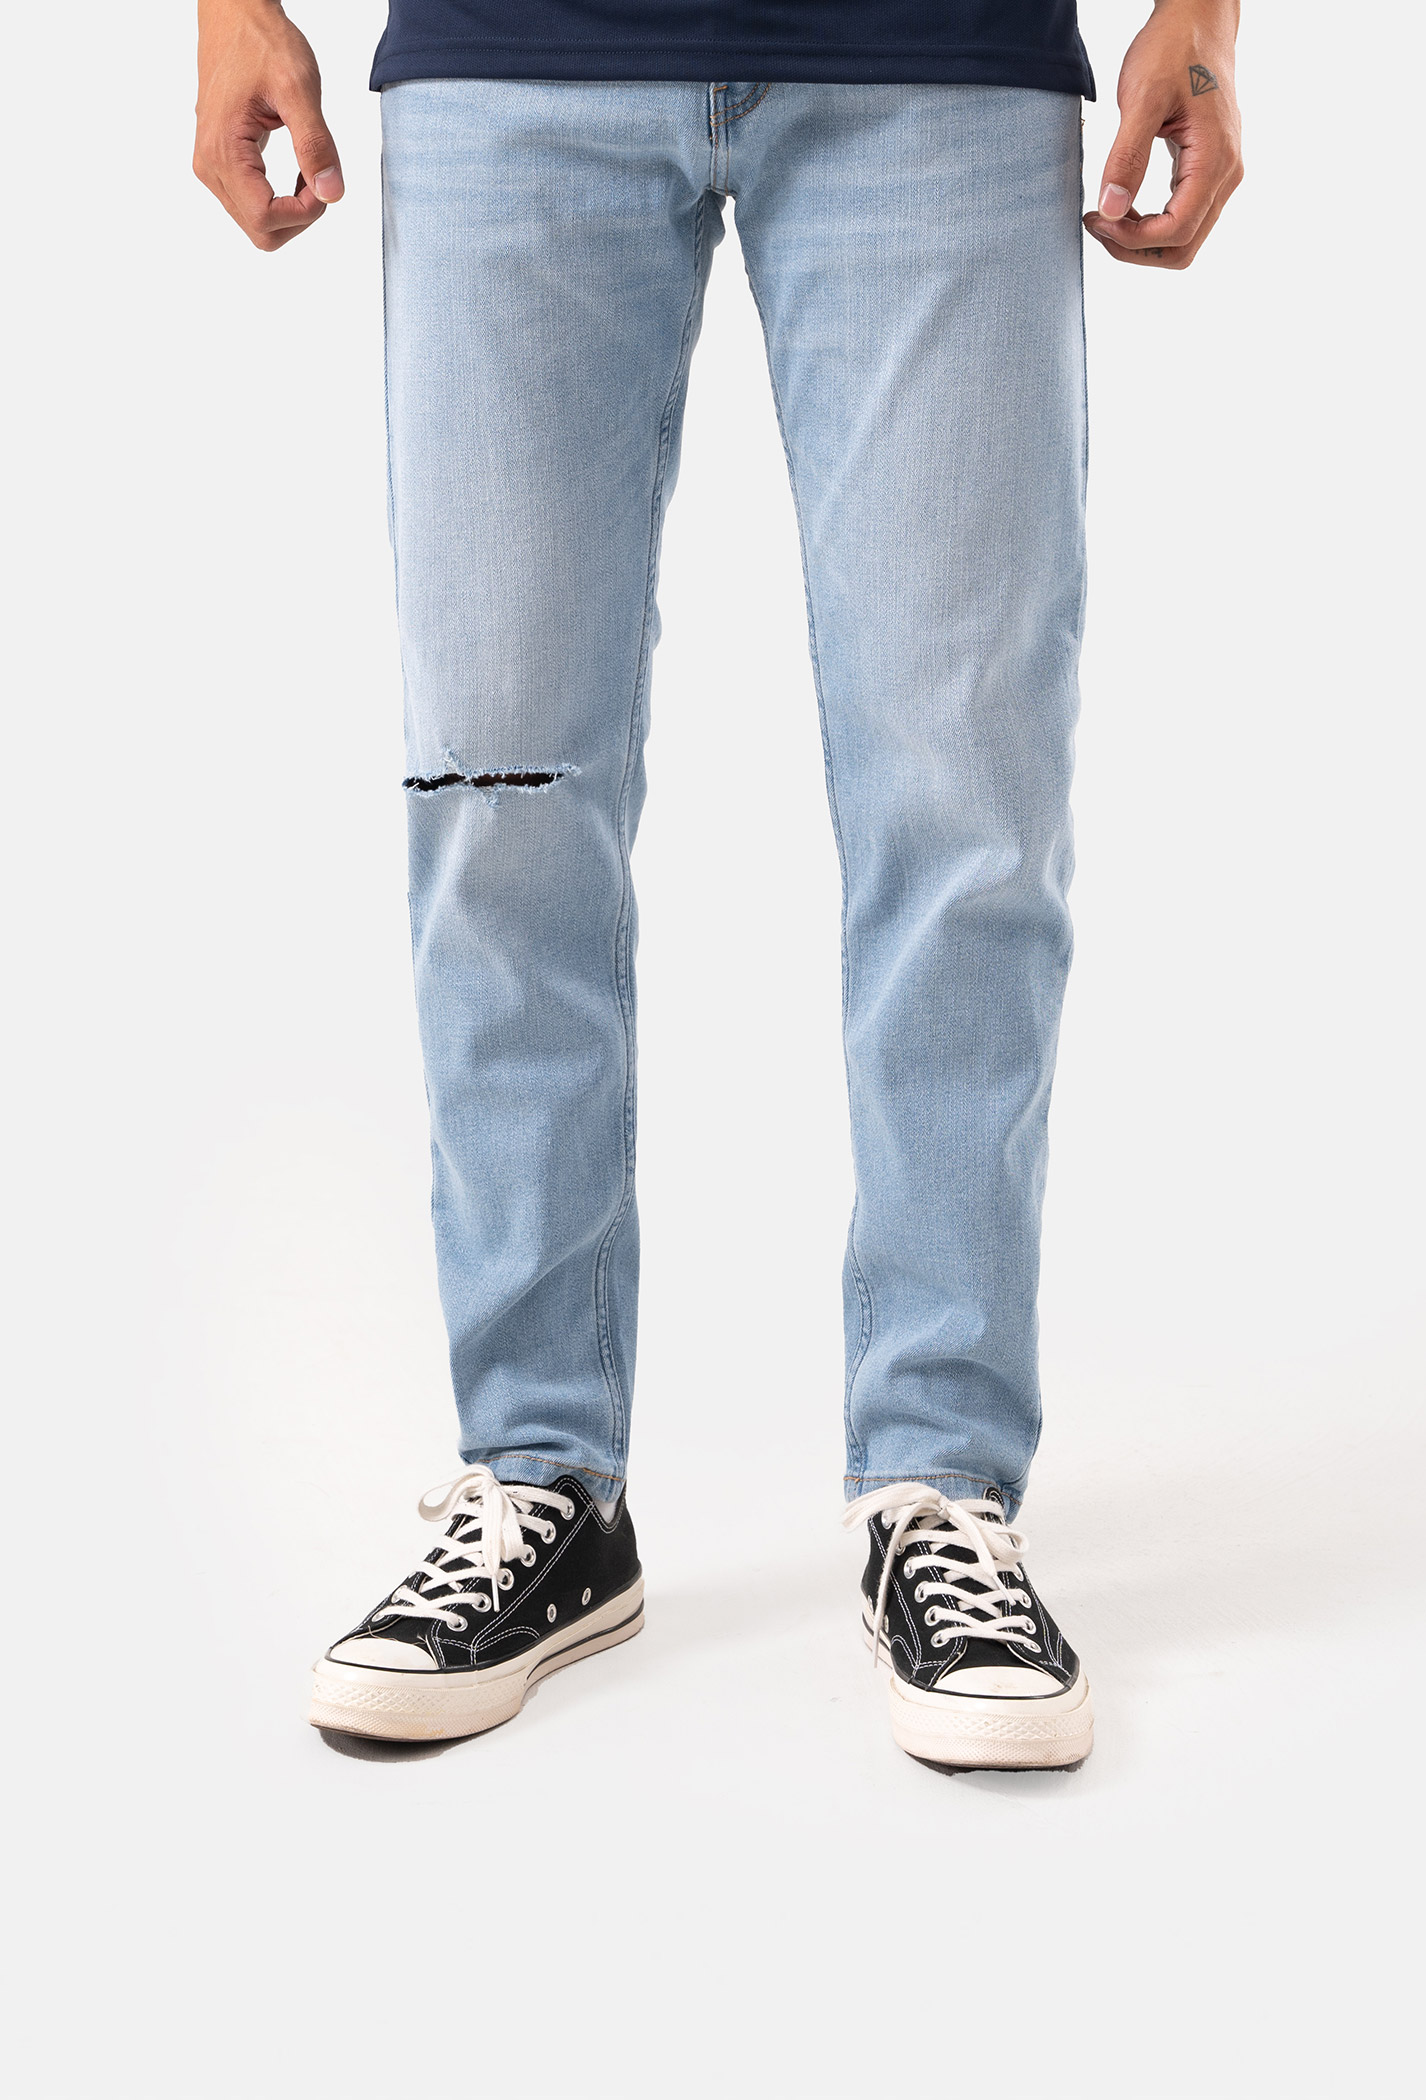 Quần Jeans Basic Slimfit xé gối - màu Xanh nhạt 